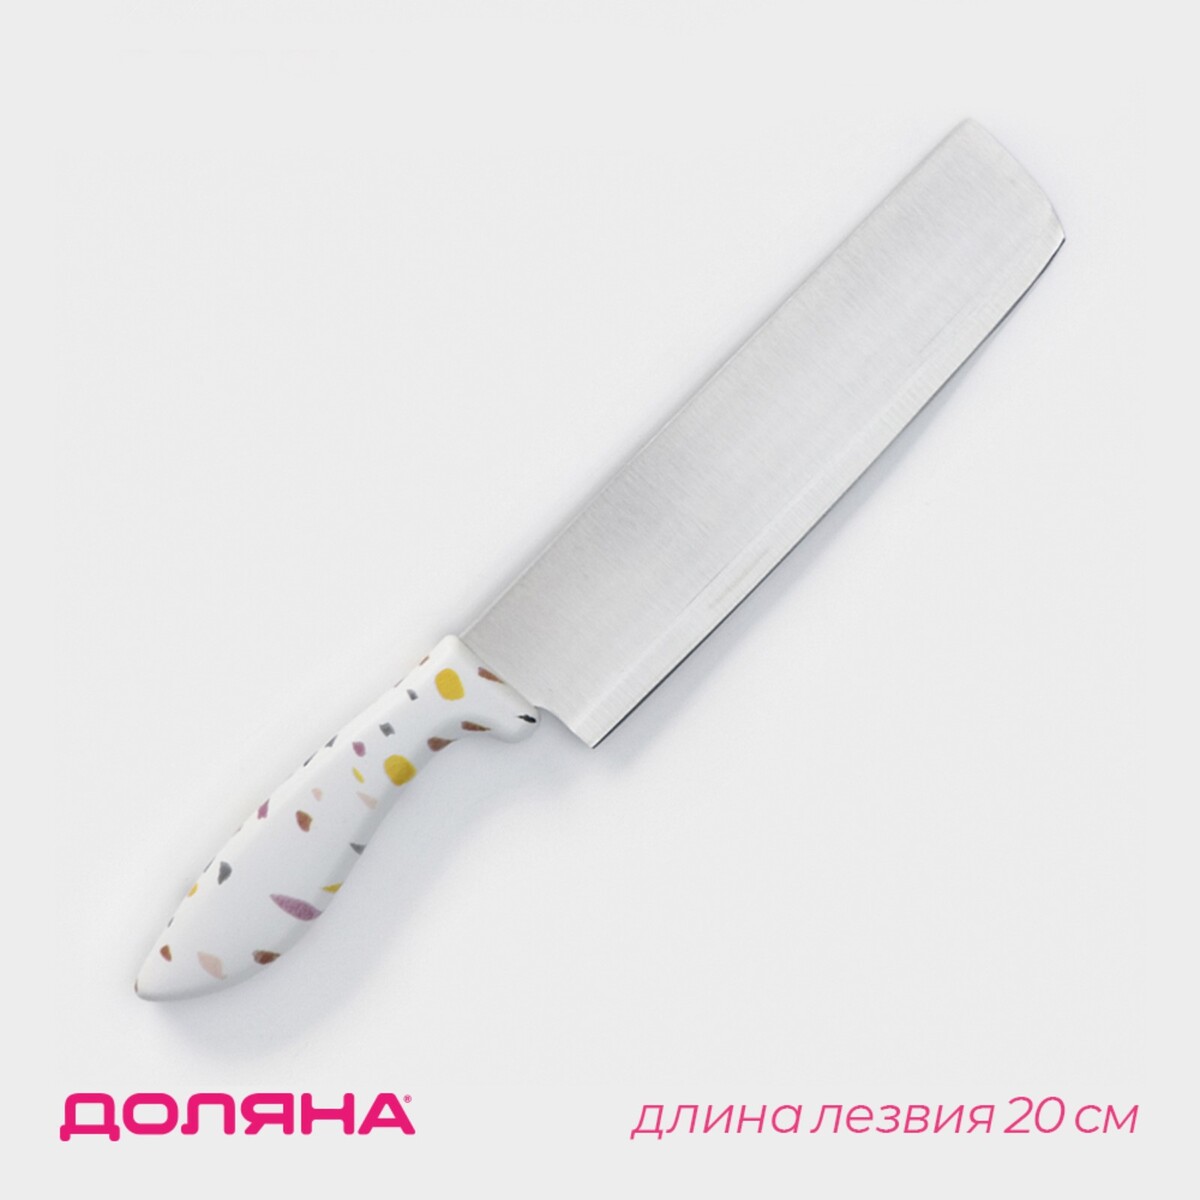 Нож - топорик кухонный доляна sparkle, лезвие 20 см, цвет белый нож топорик кухонный доляна sparkle лезвие 20 см белый